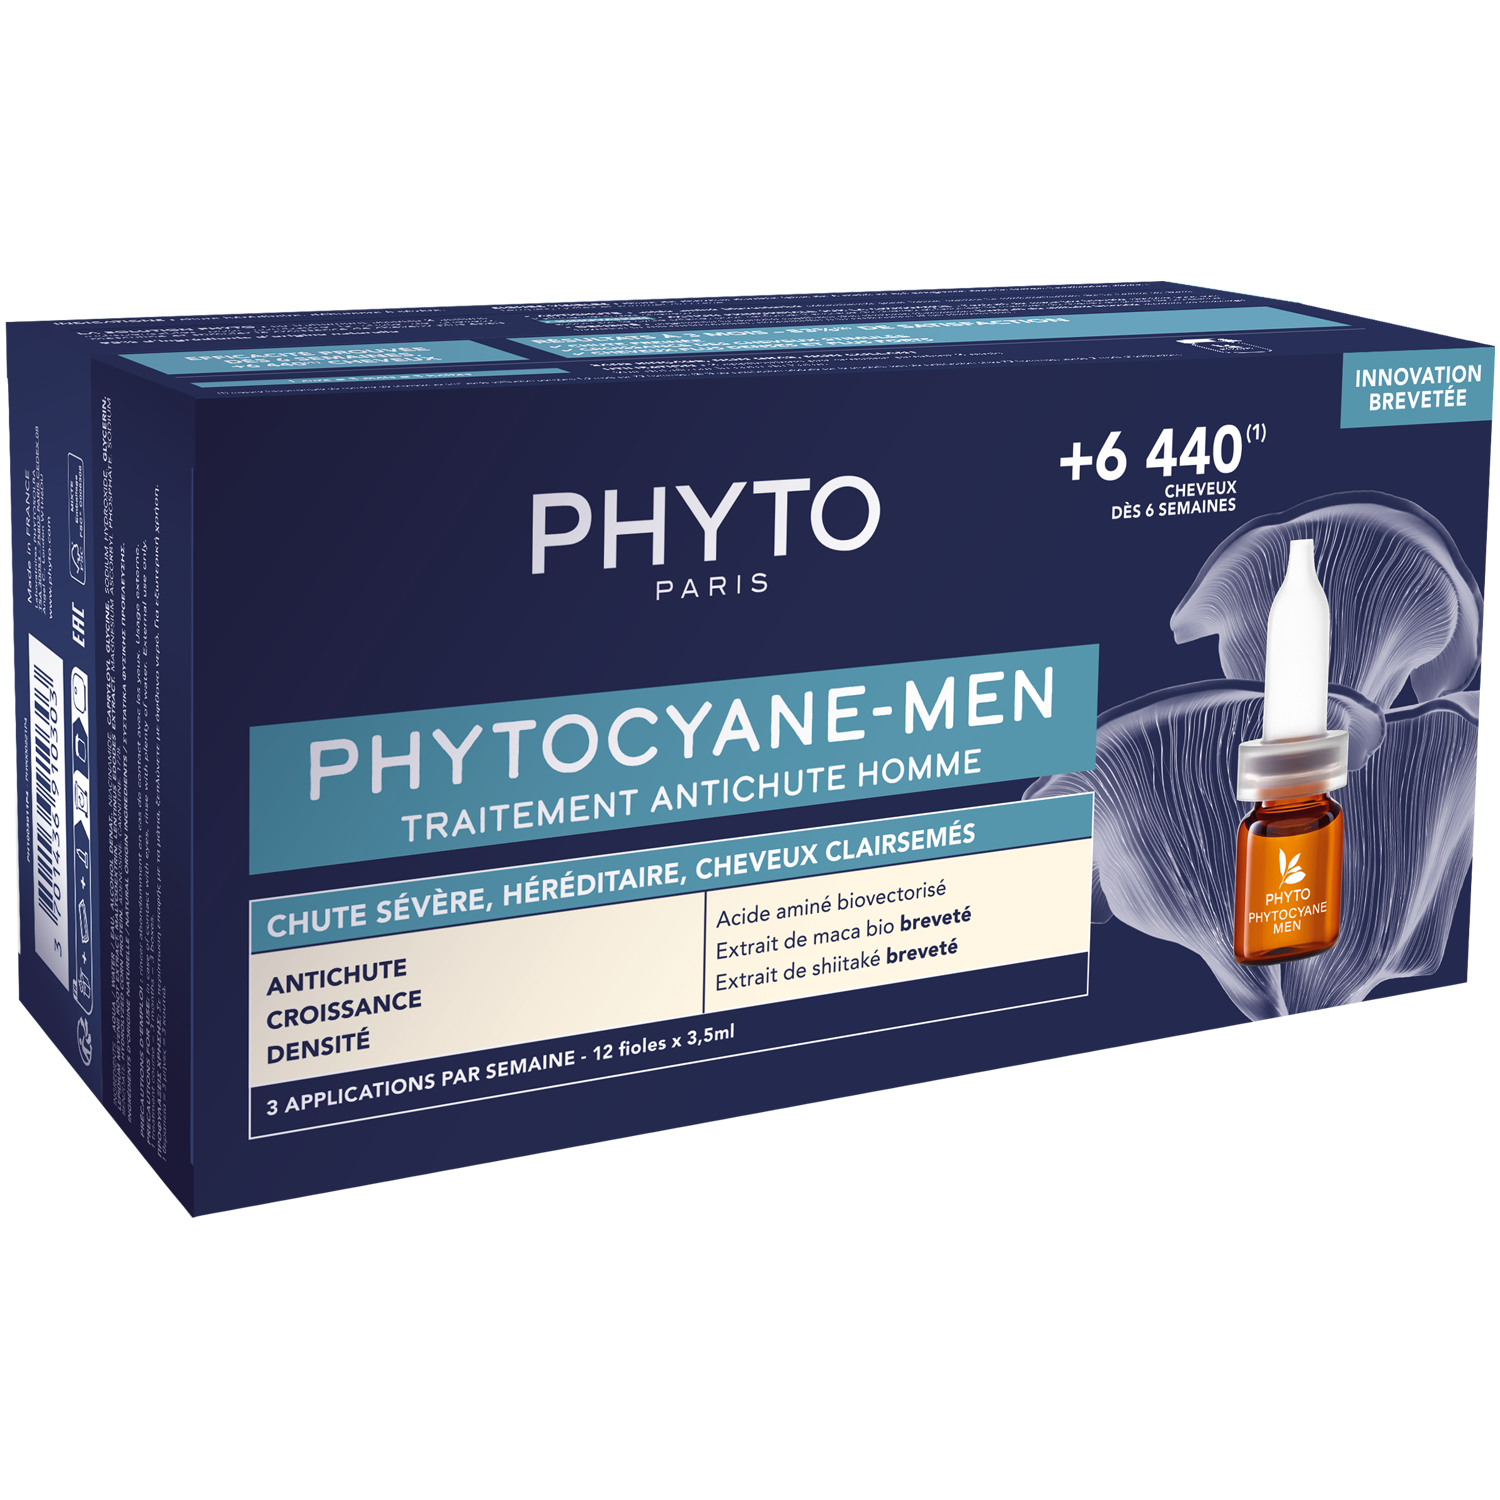 Phyto Phytocyane-Men средство против выпадения волос, 50 ​​мл phyto сыворотка против выпадения волос для женщин 12 флаконов х 5 мл phyto phytocyane